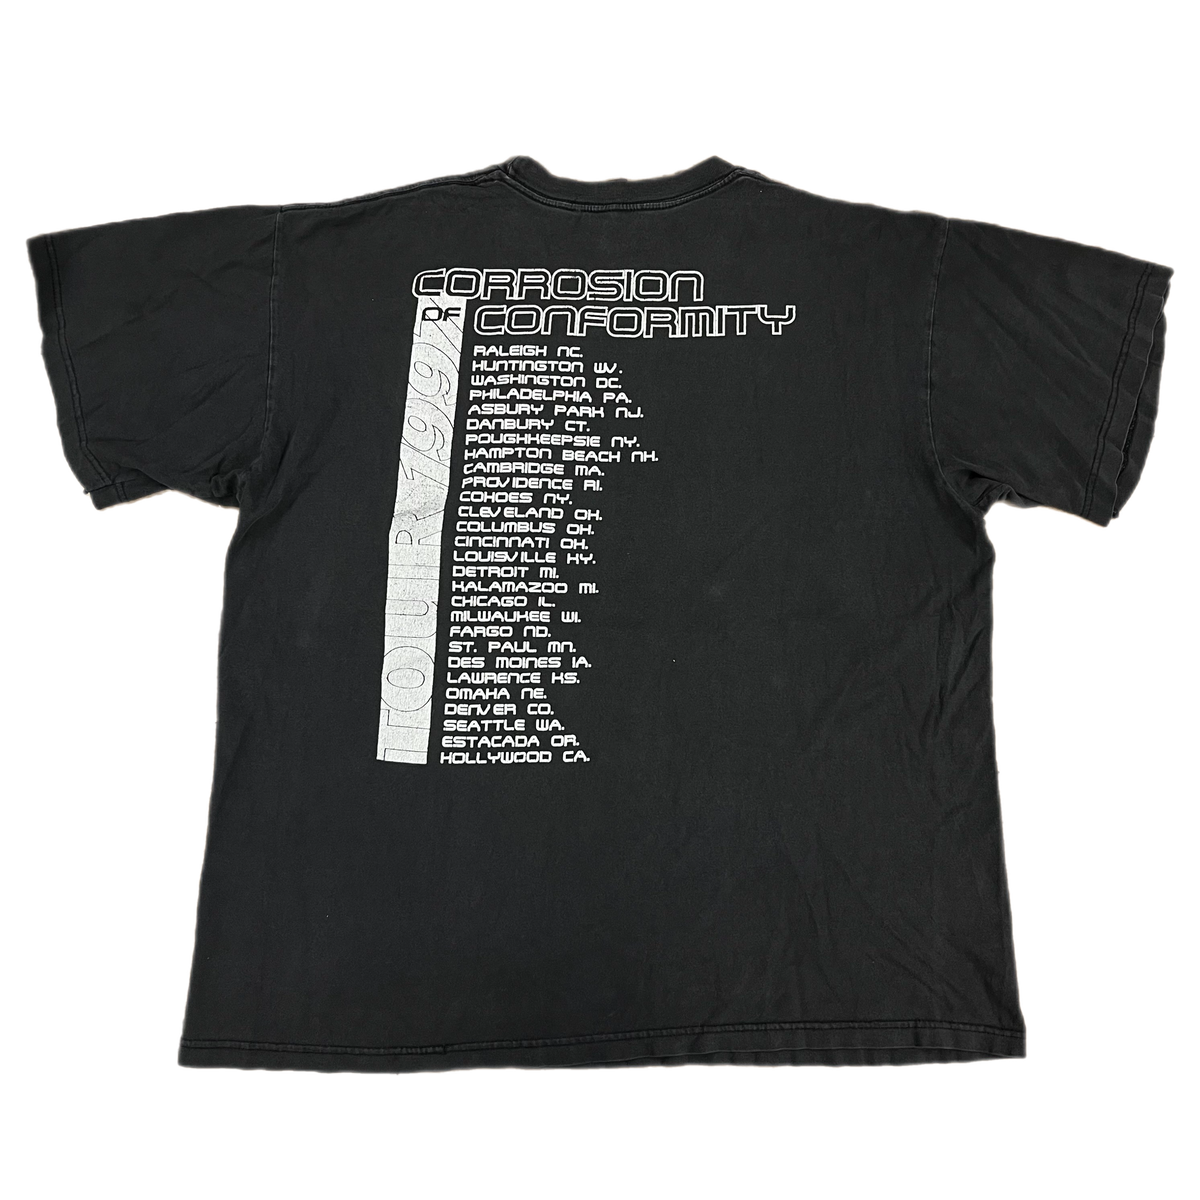 Vintage Corrosion Of Conformity &quot;Wiseblood&quot; Tour T-Shirt